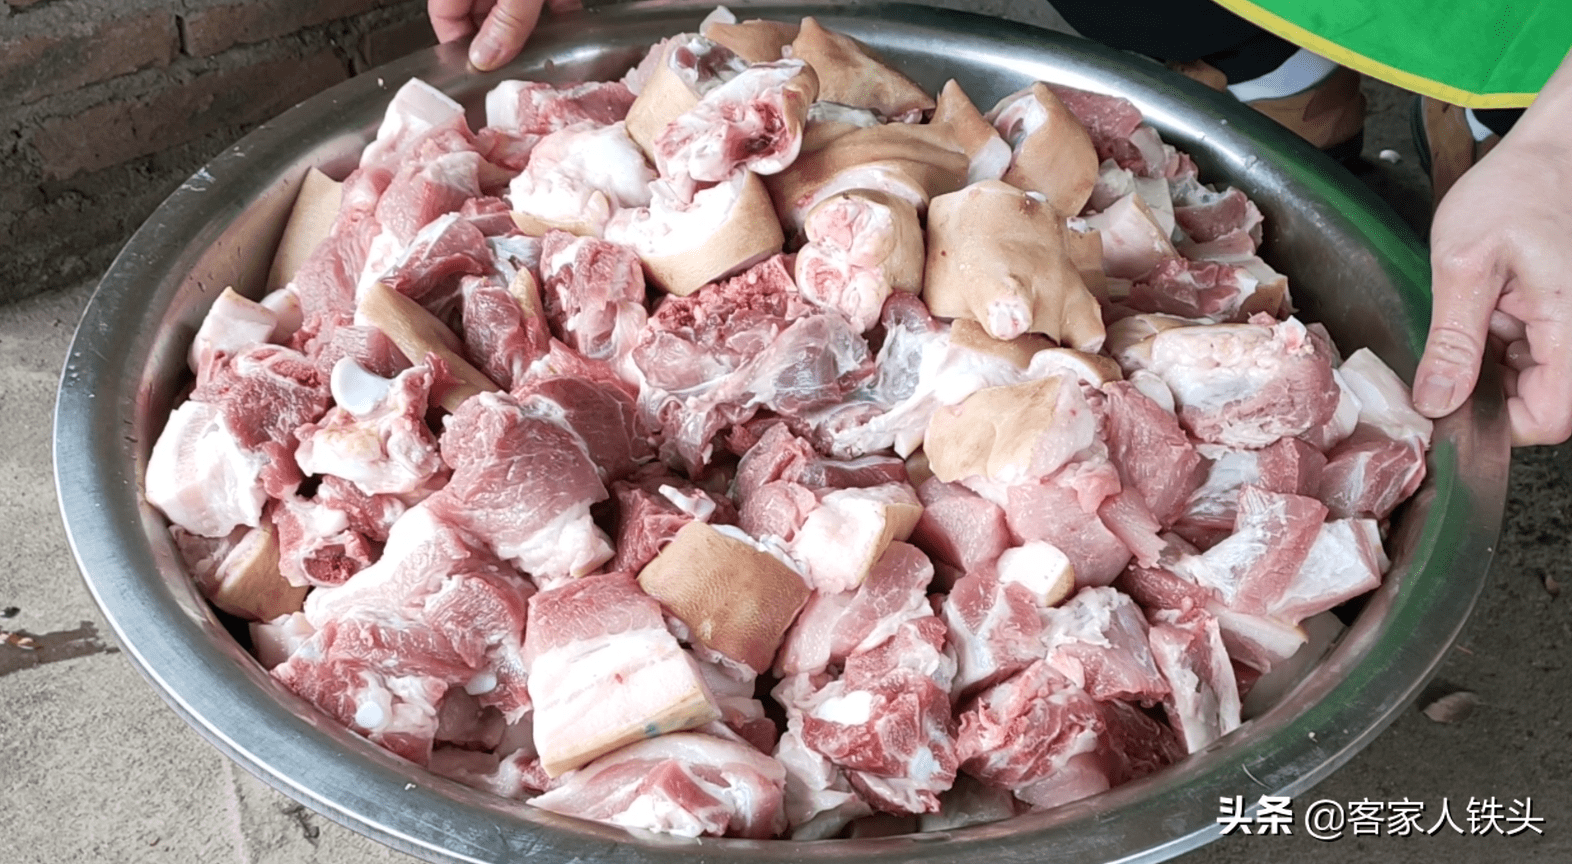 客家人过年吃的焖肉做法原来那么简单一次做70斤好吃不腻